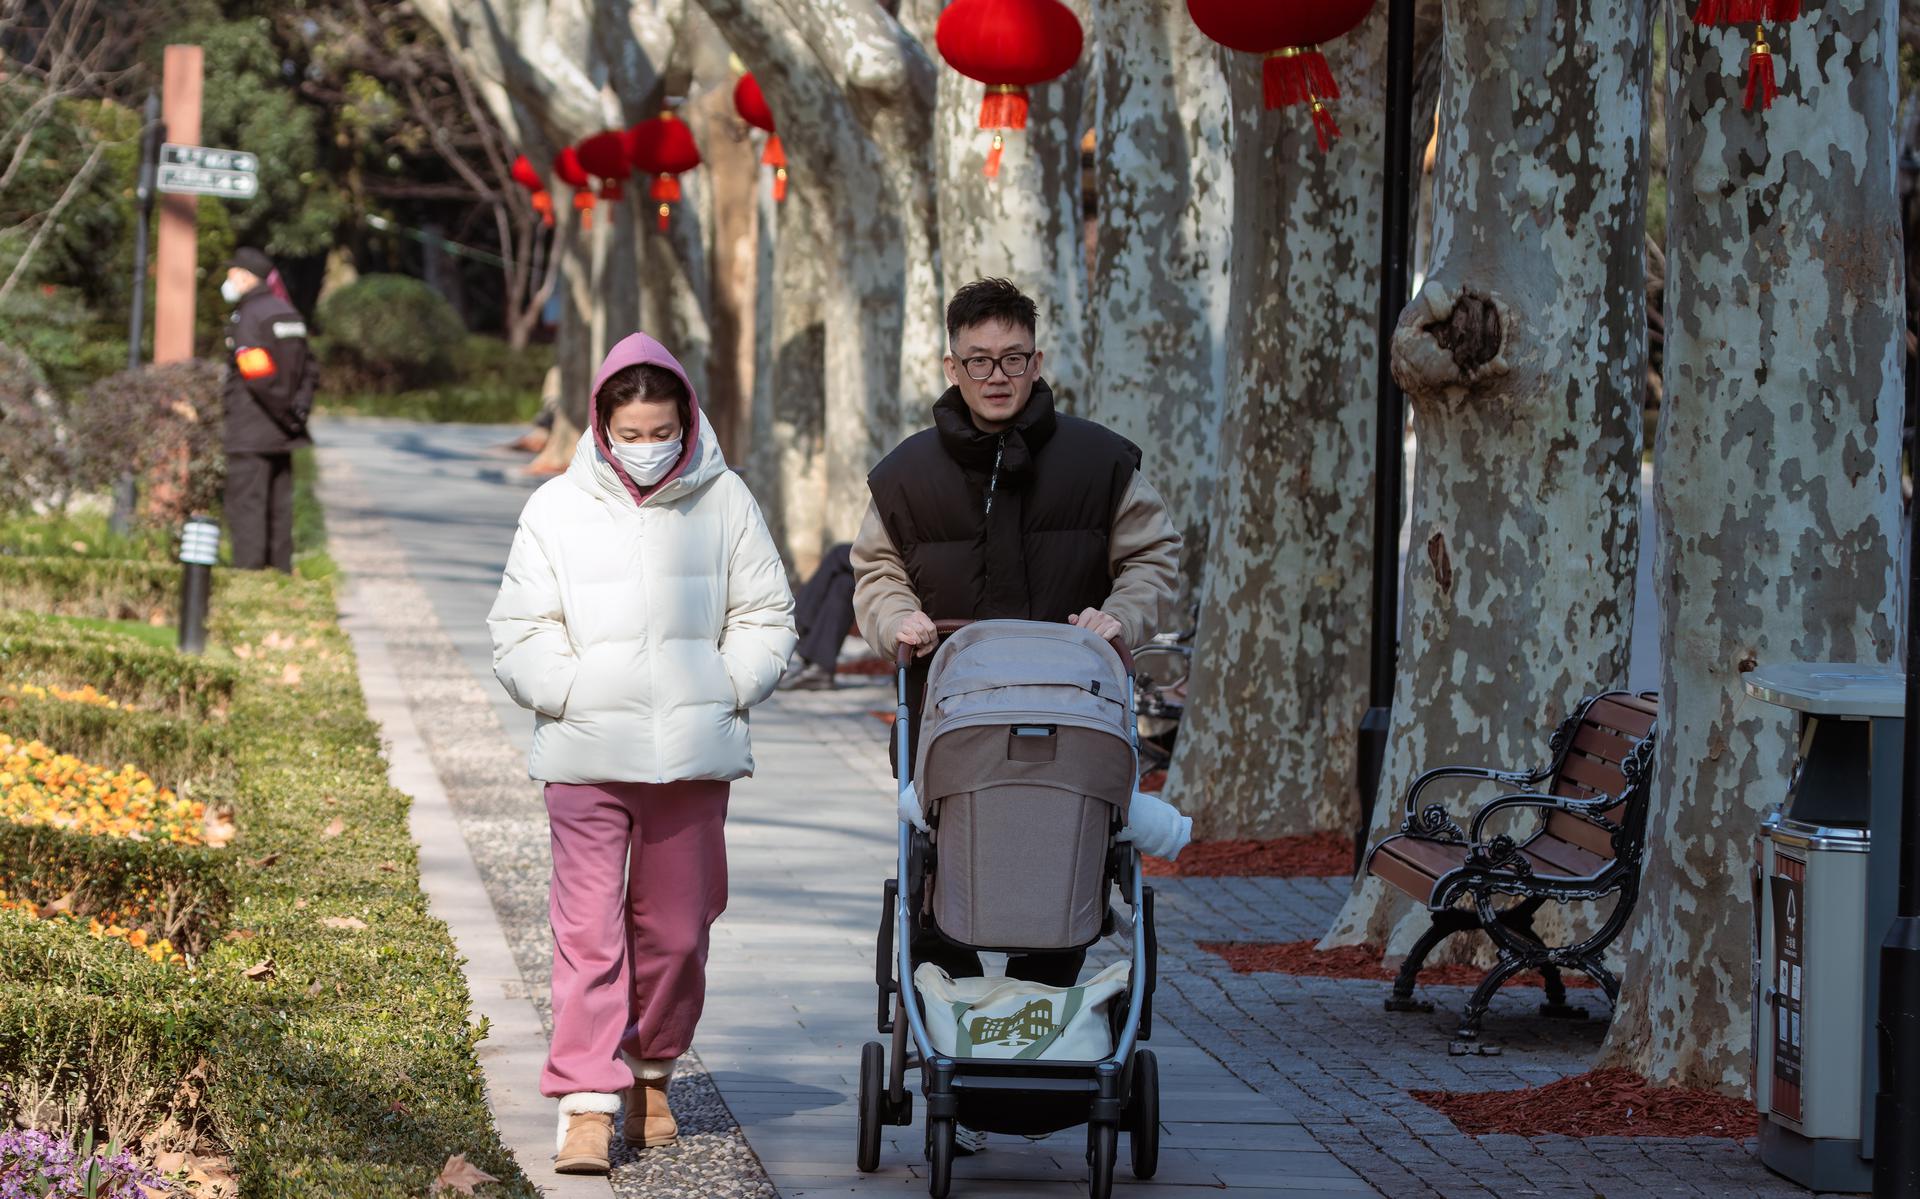 Chinese families verwachten vaak dat de vrouw de zorgtaken op zich neemt, ook die voor haar schoonouders. 